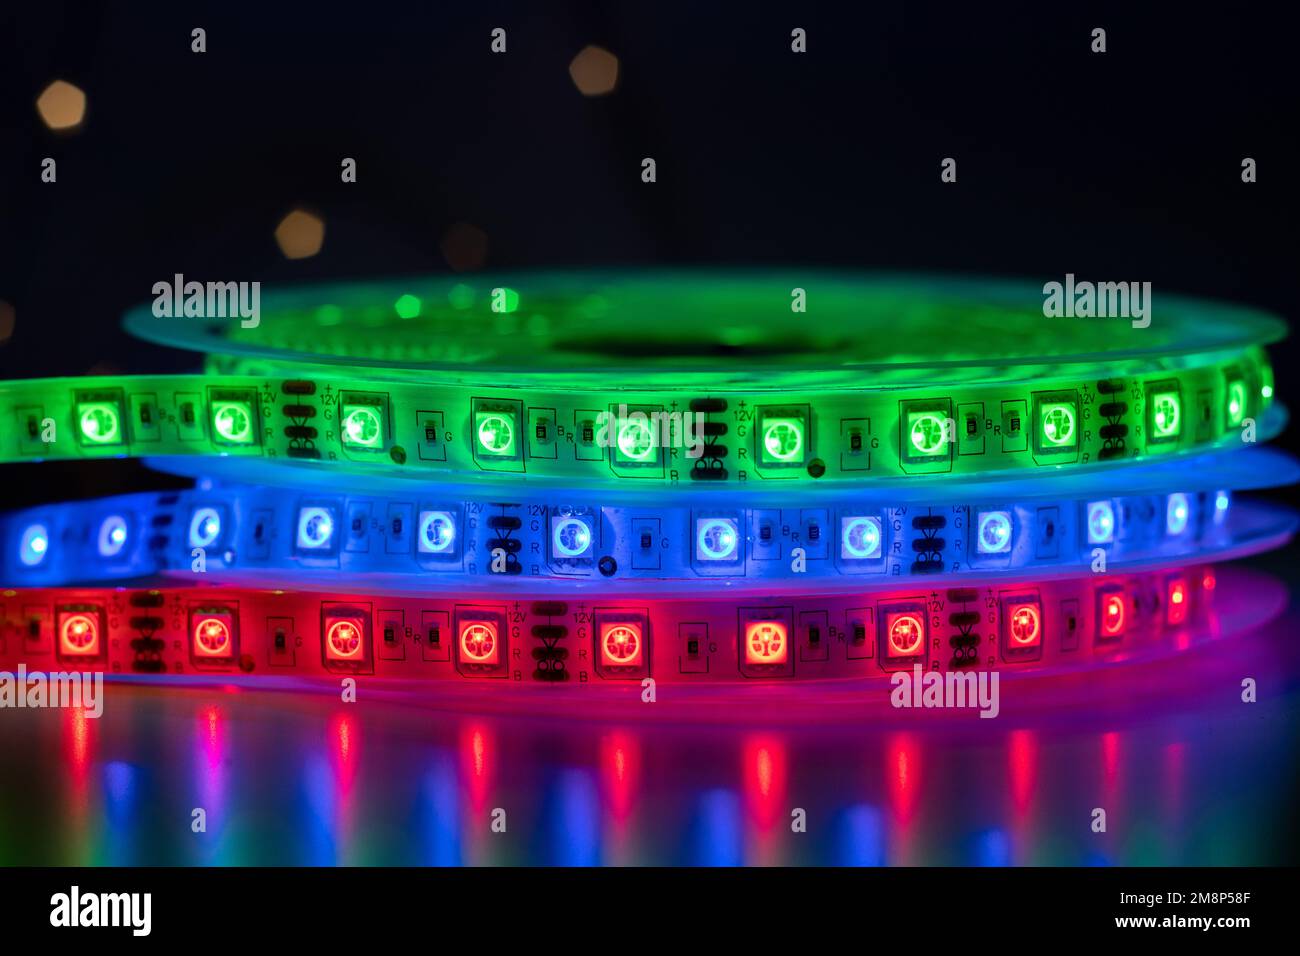 Bobina con rotolo di illuminazione LED a striscia luminosa posta sul tavolo, colore verde, rosso e blu Foto Stock